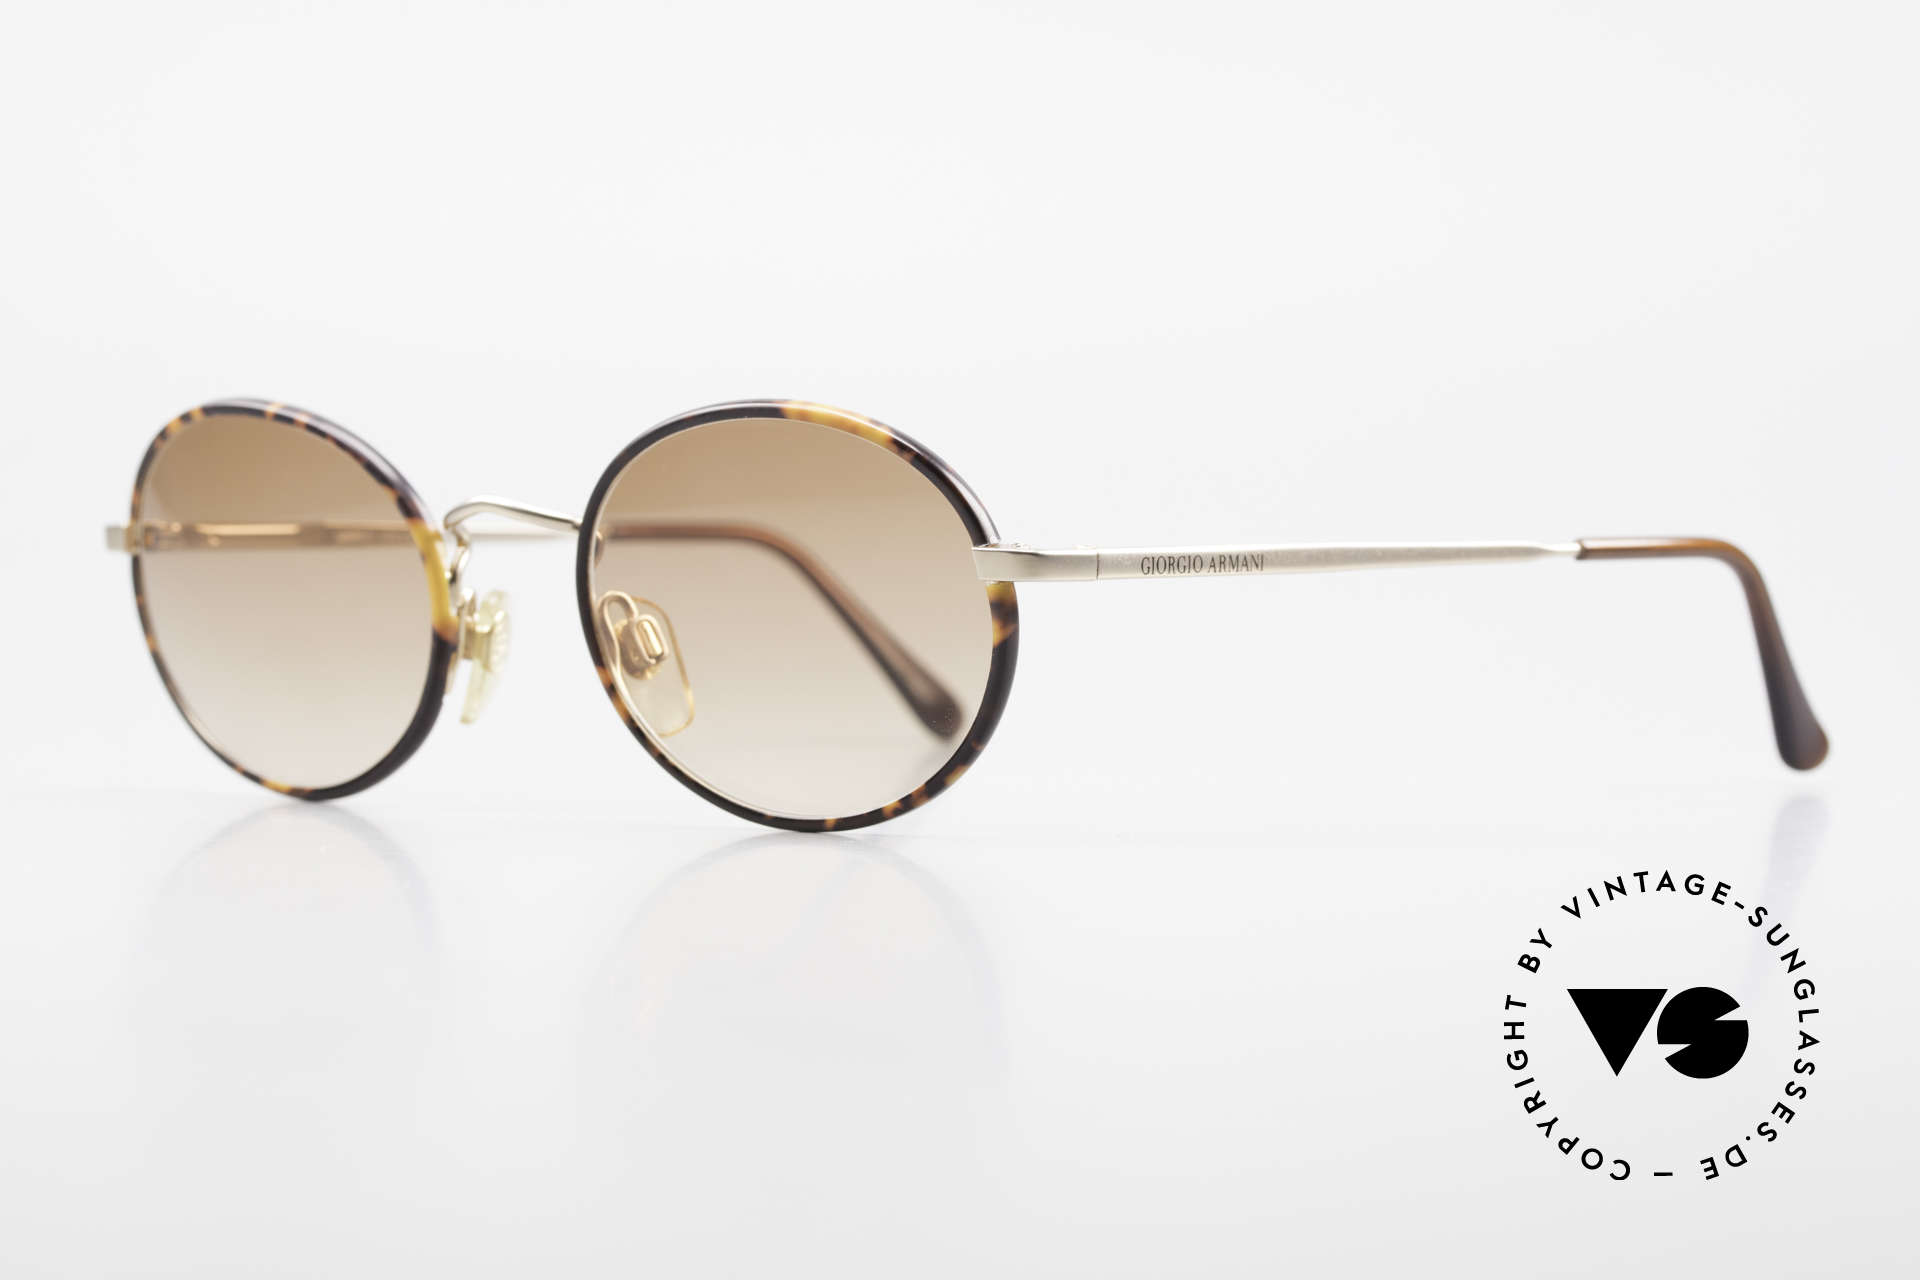 Giorgio Armani 235 Ovale Vintage Sonnenbrille, goldene Fassung mit Windsor-Ringen in "Schildpatt", Passend für Herren und Damen